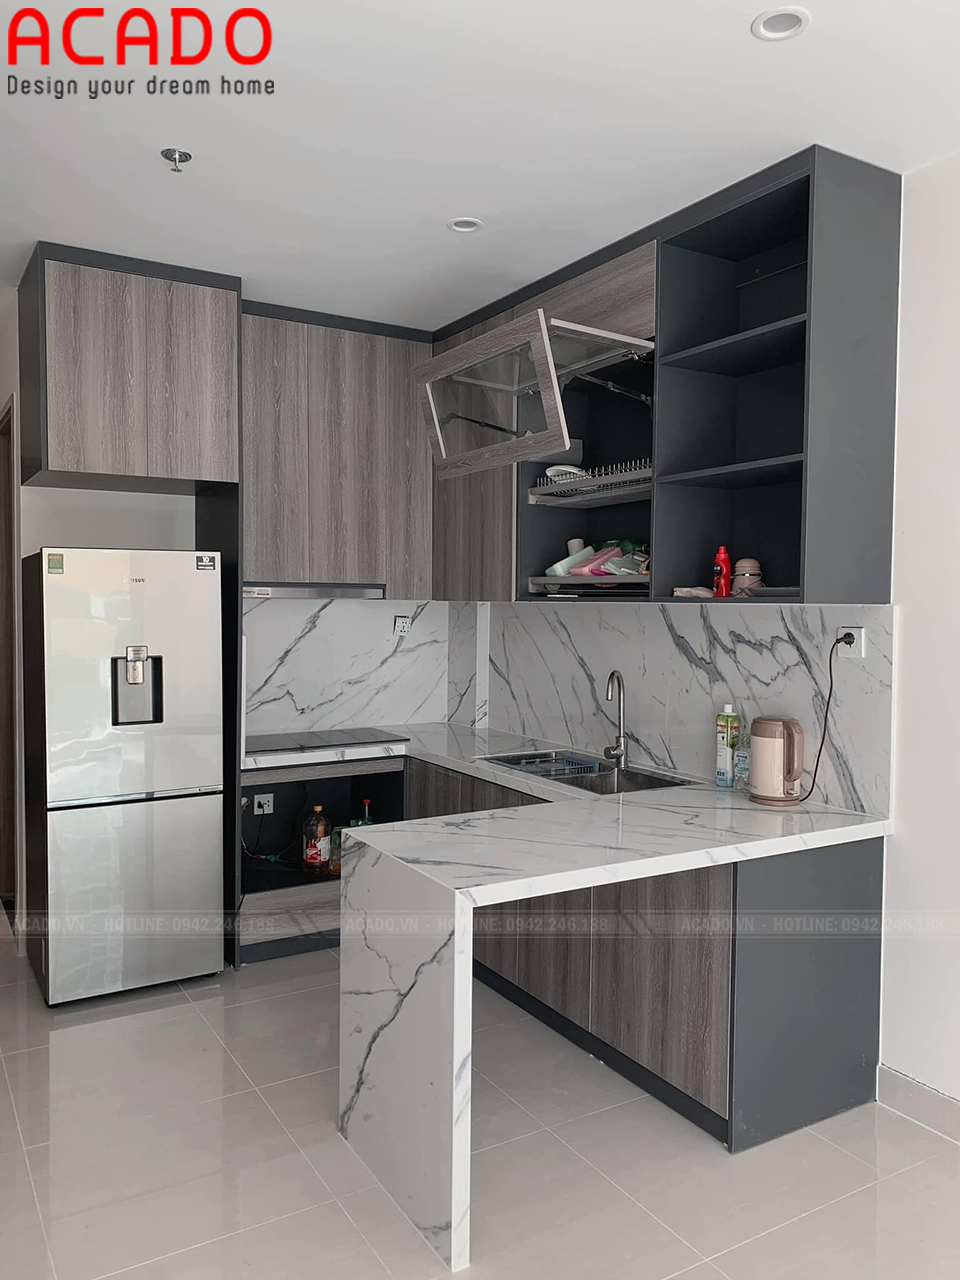 Tủ bếp mdf phủ laminate màu vân gỗ sang trọng. Tủ bếp hình chữ i phù hợp với bếp có diện tích nhỏ như chung cư